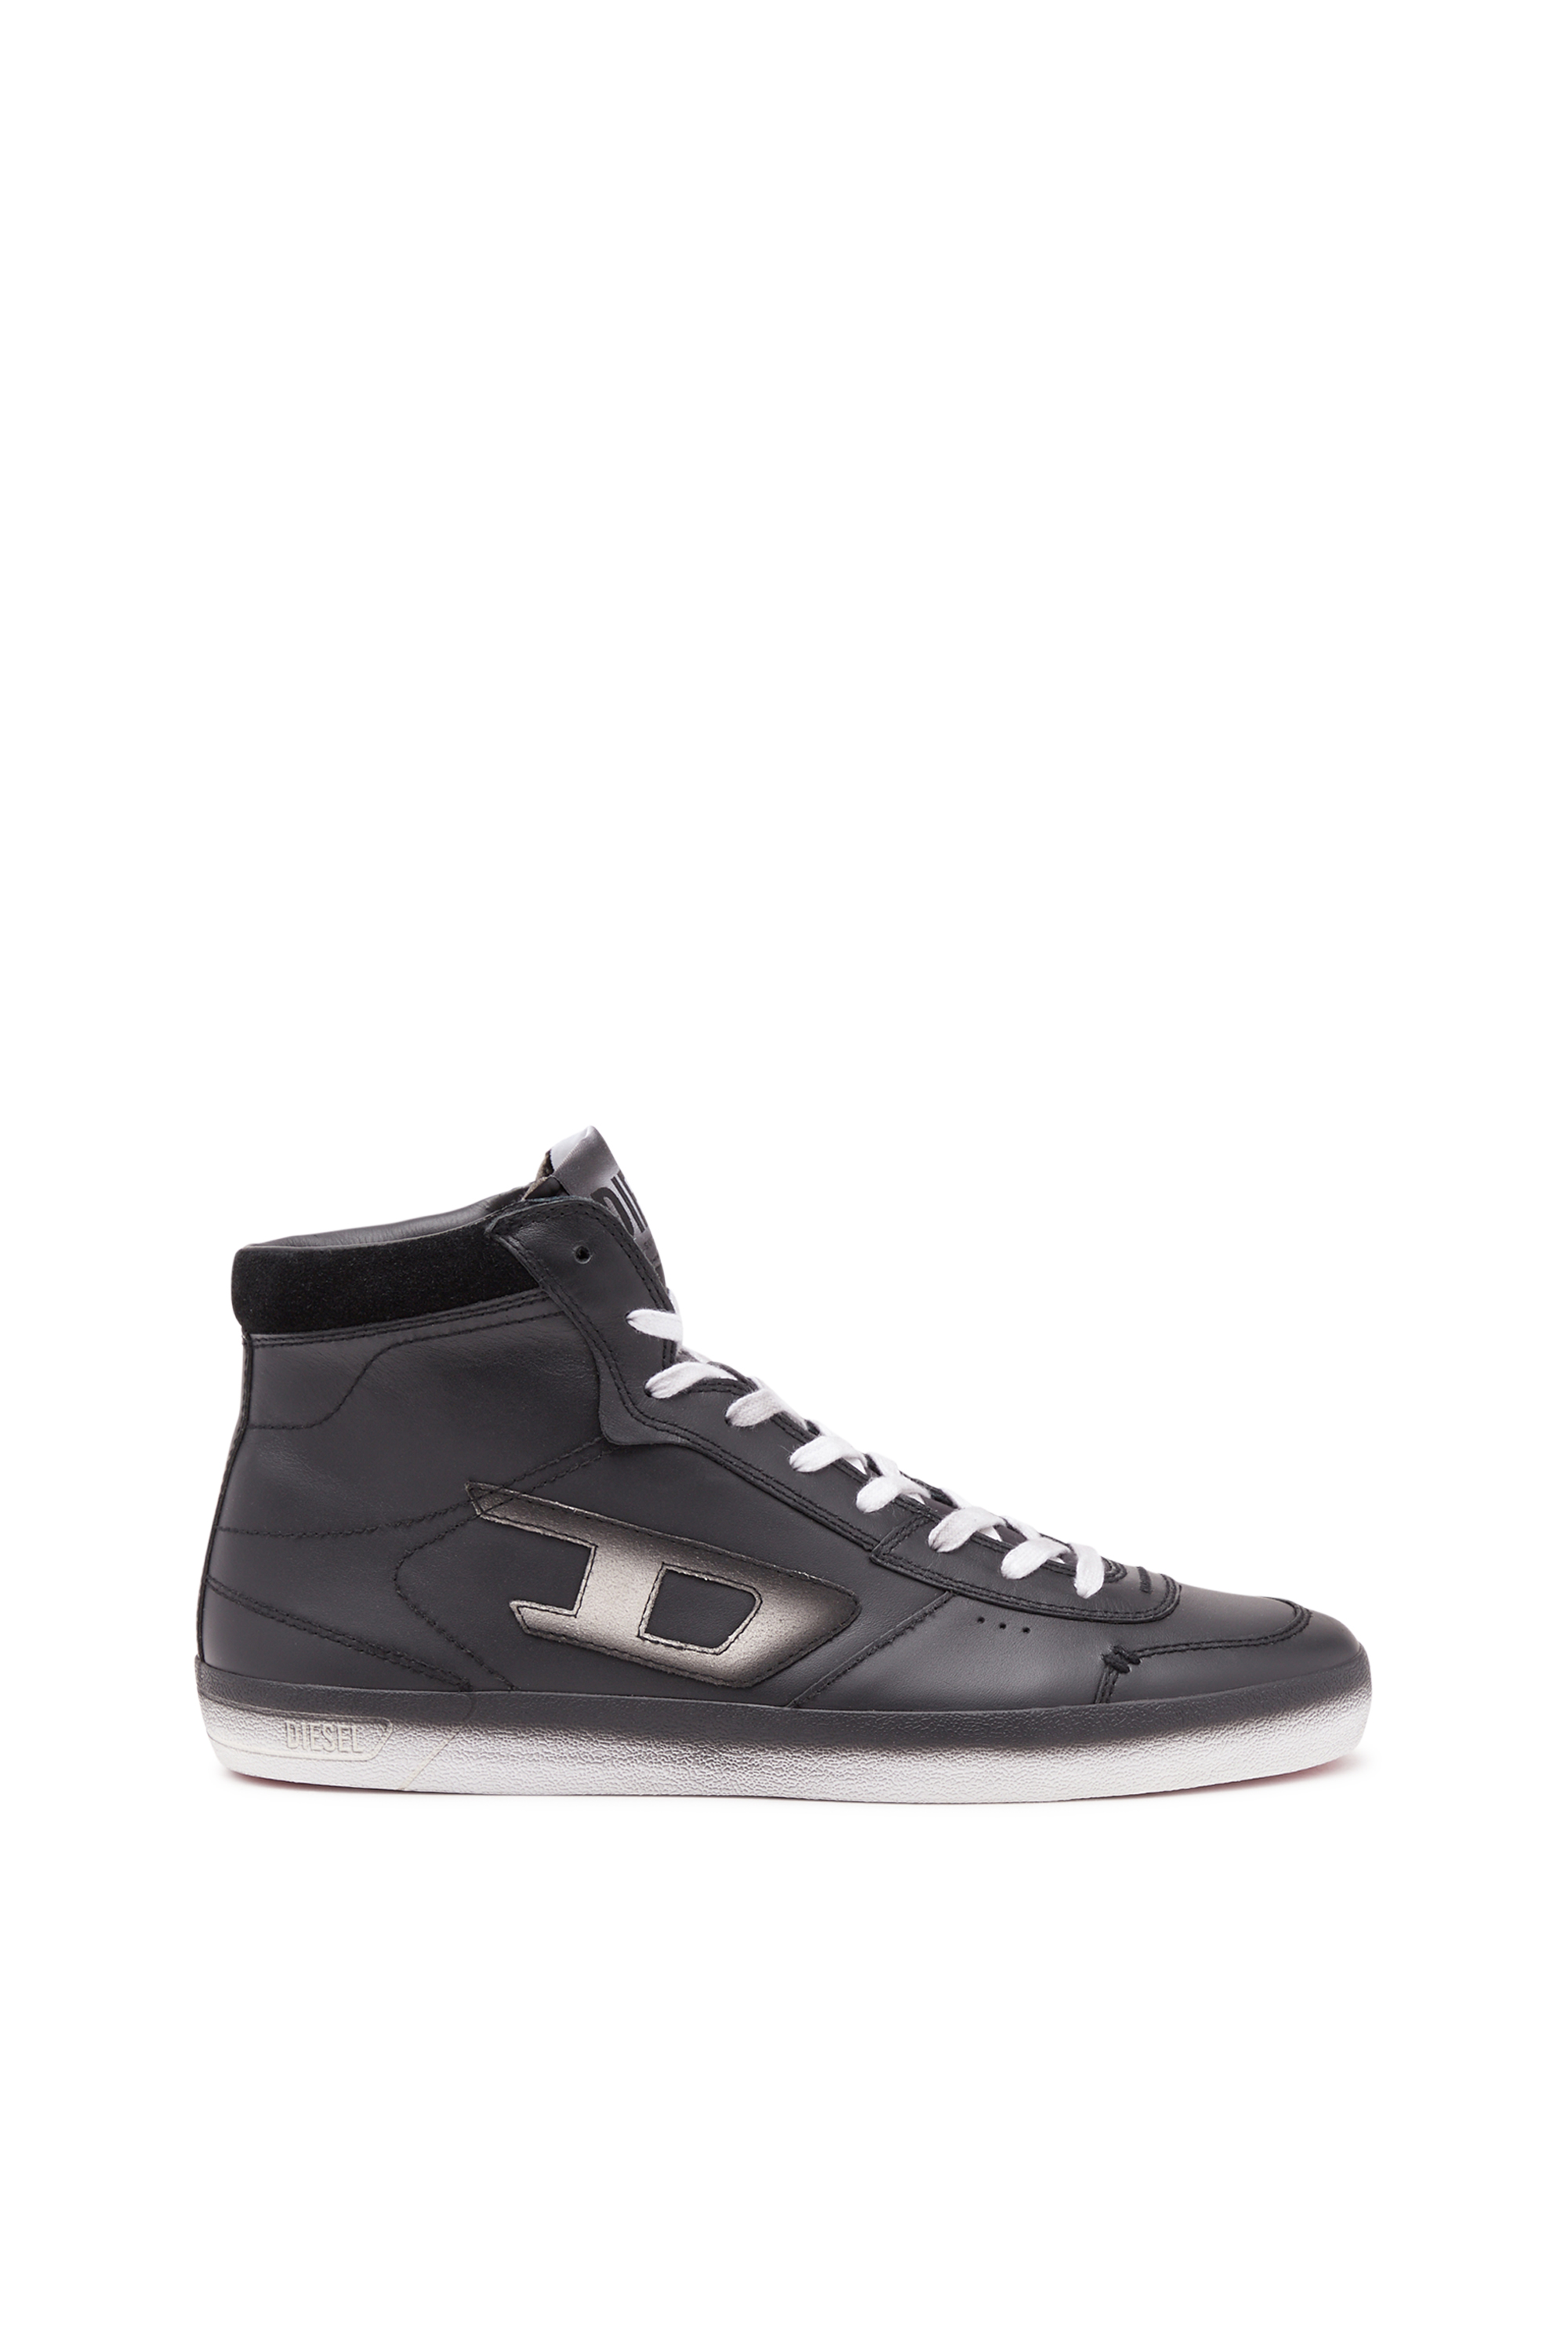 Diesel - S-Leroji Mid - High Top-Sneakers aus Leder mit ausgelaufenem Farbe-Effekt - Sneakers - Herren - Schwarz